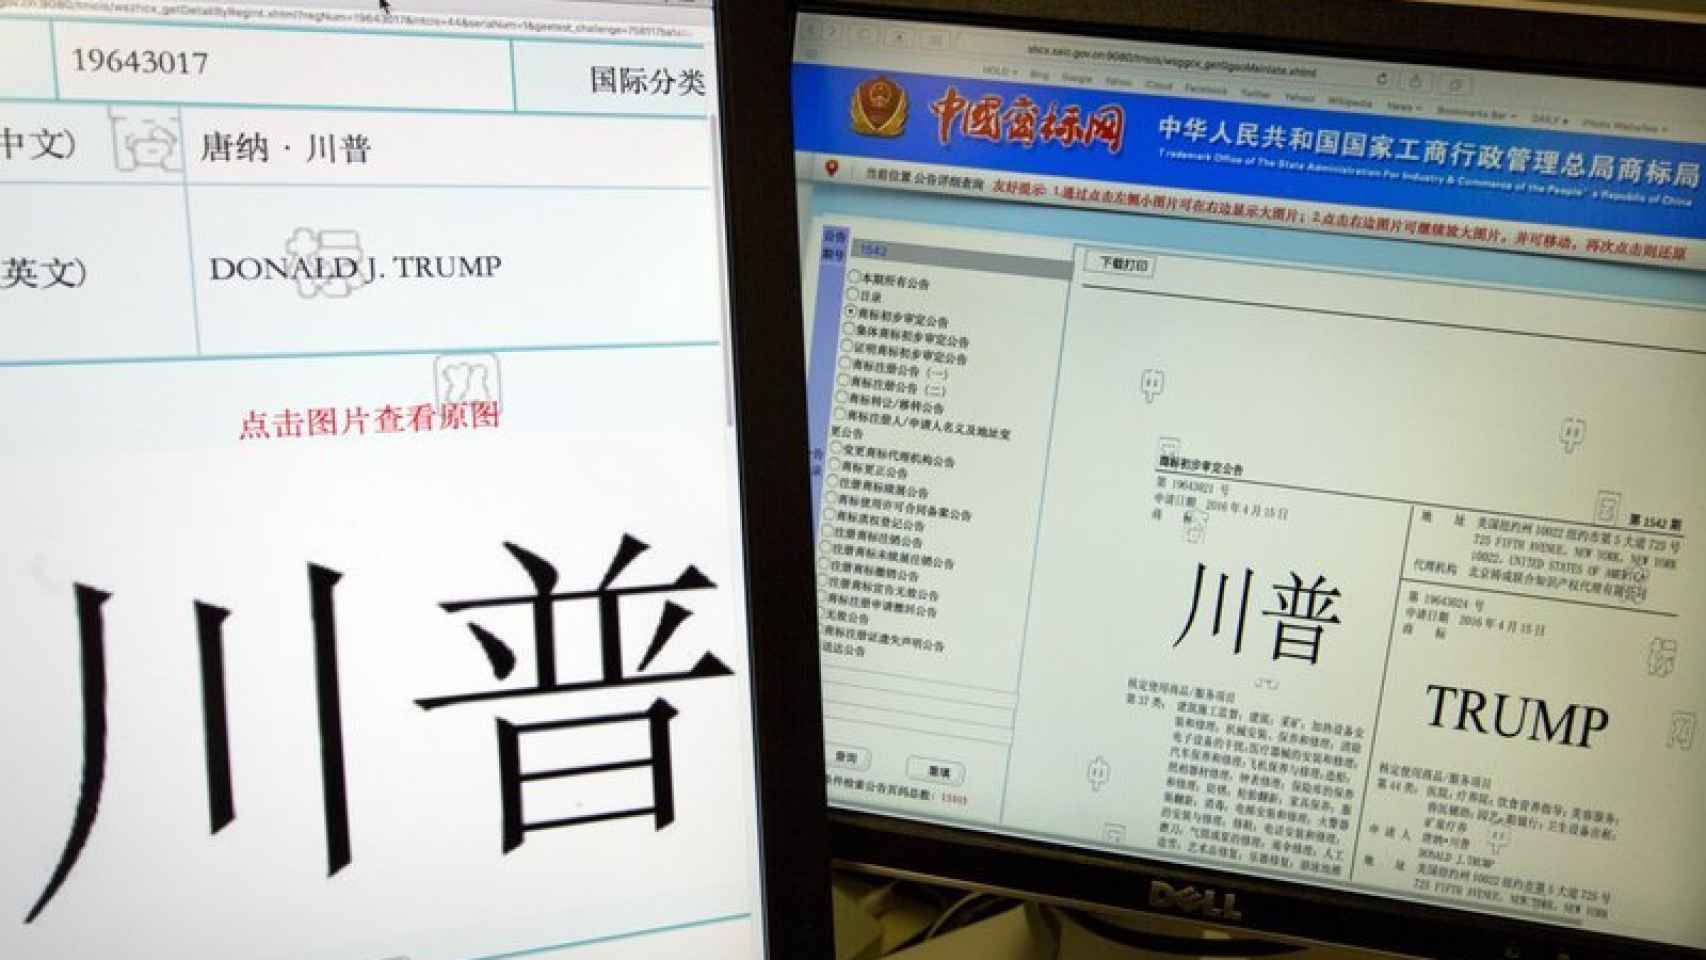 Imagen de los documentos registrados en la Oficina de Marcas china.